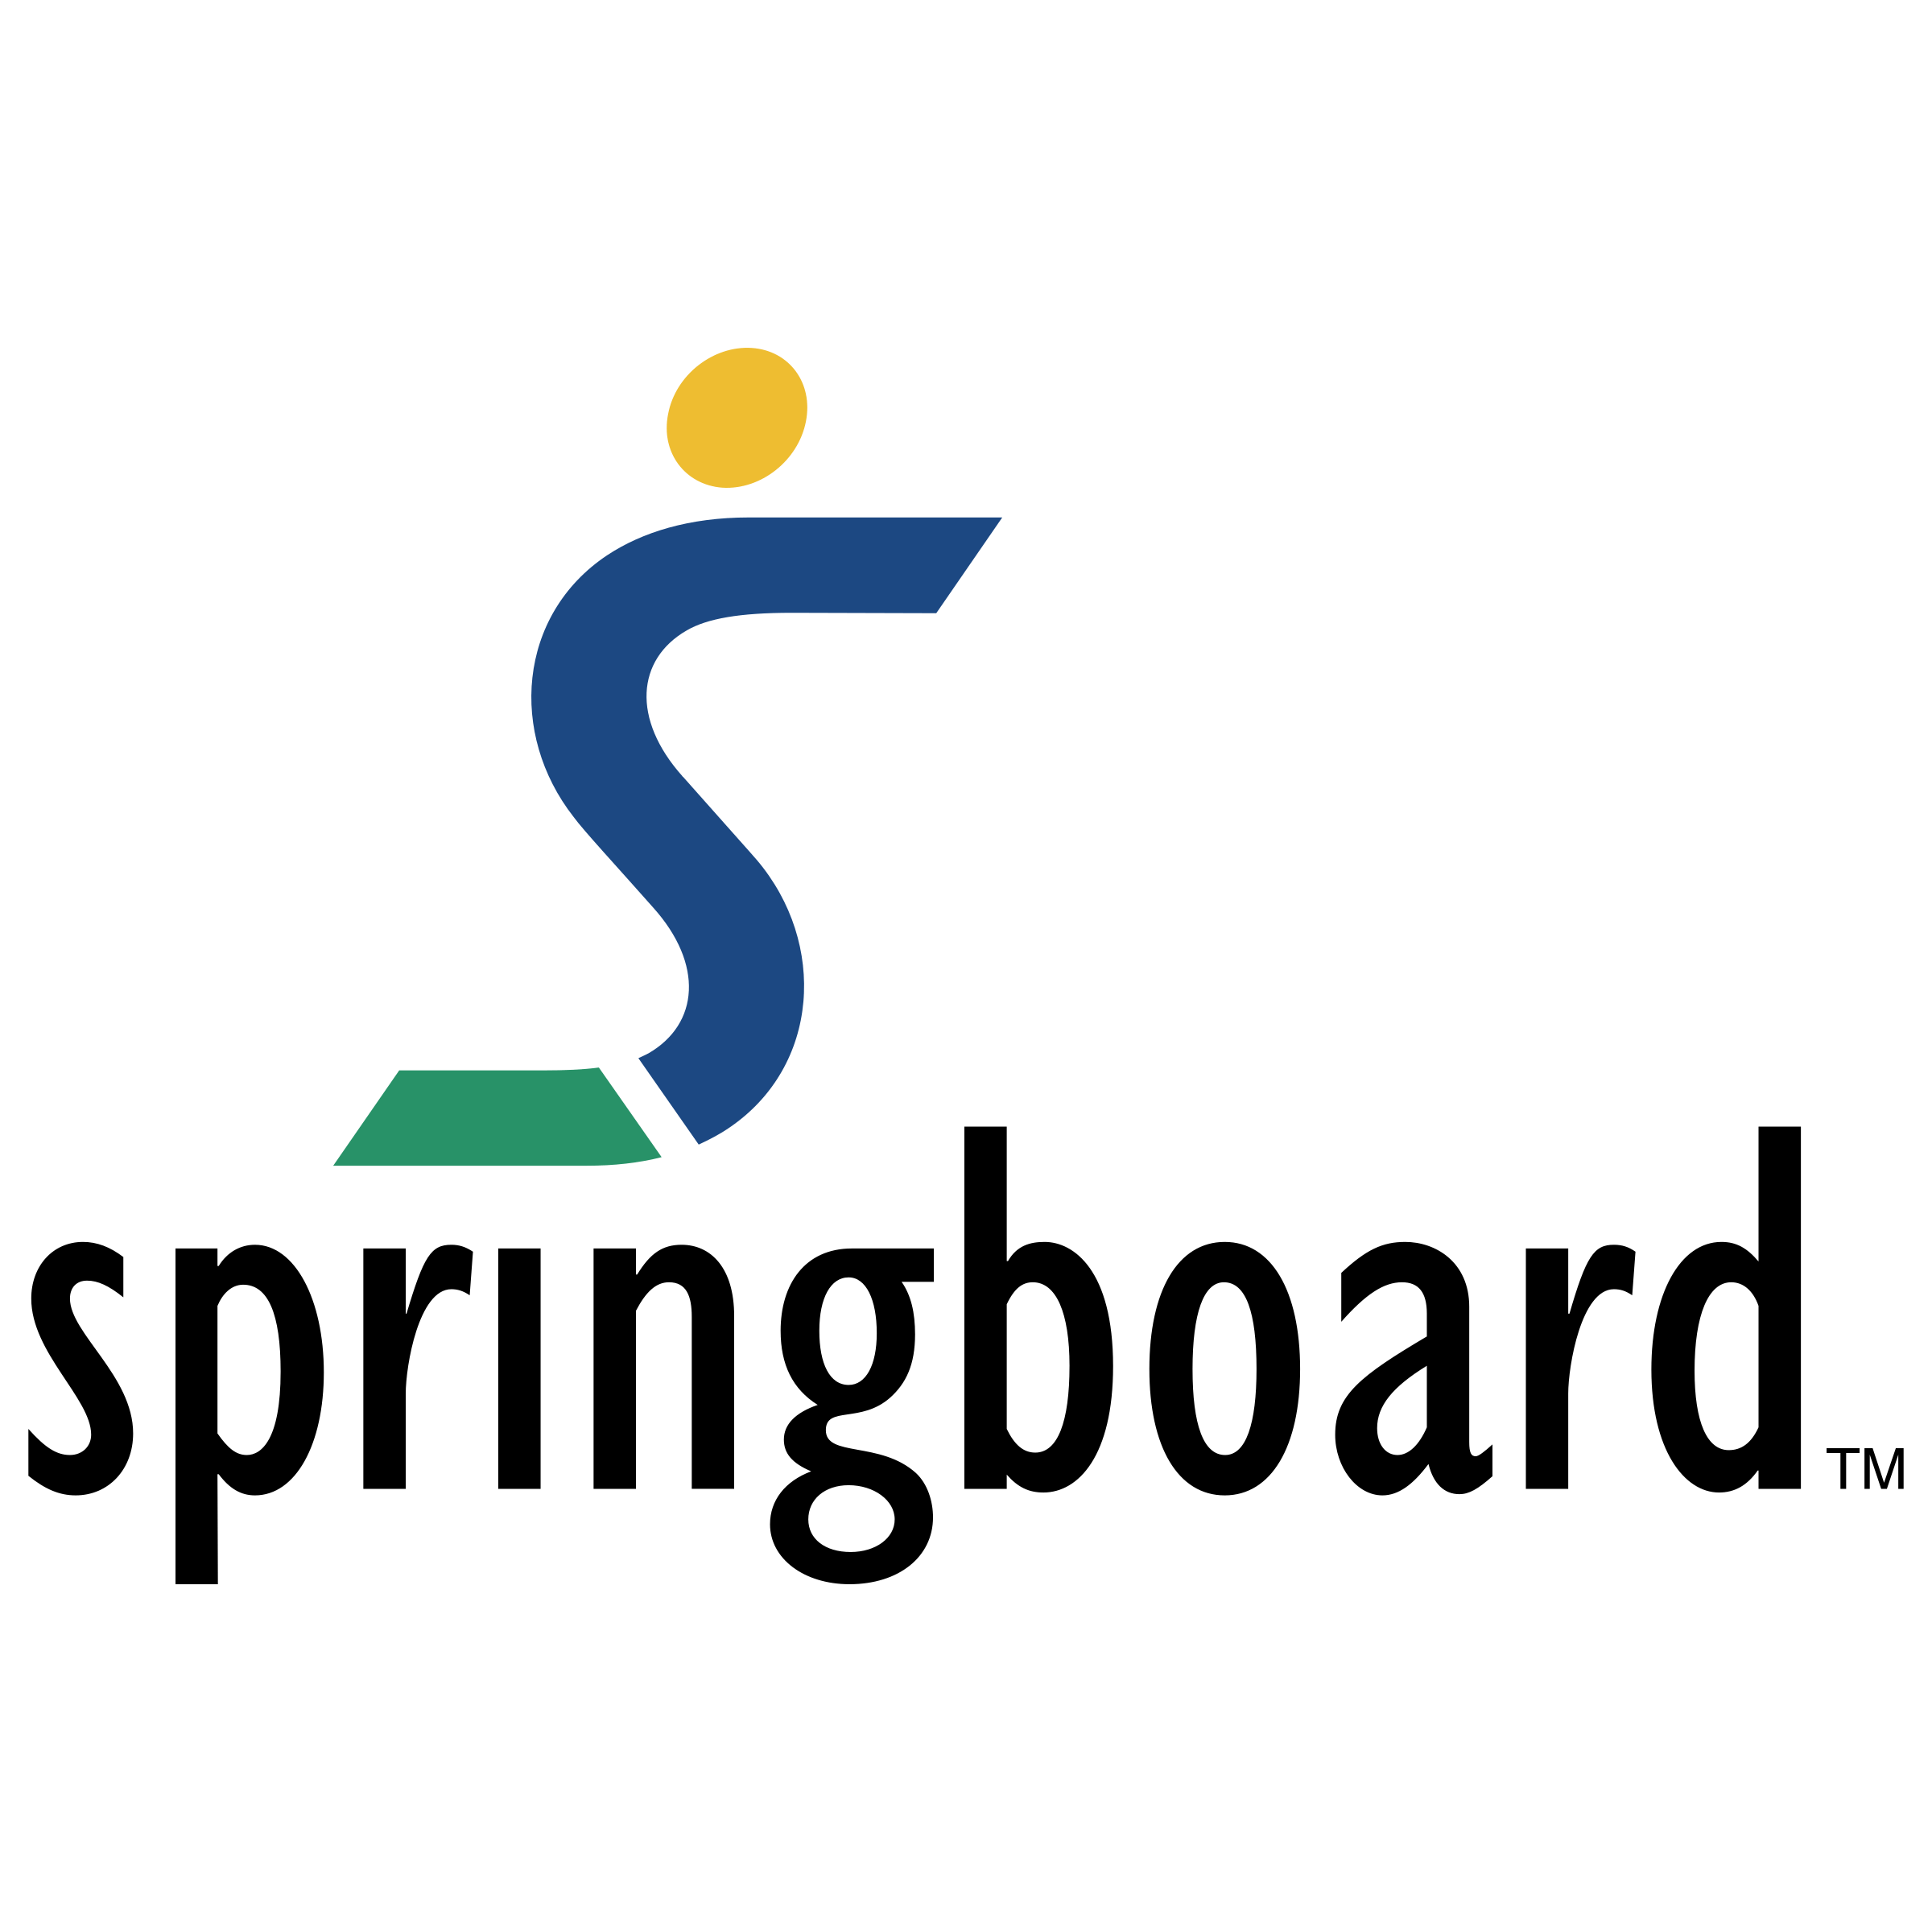 Springboard Logo - Springboard Logo PNG Transparent & SVG Vector - Freebie Supply